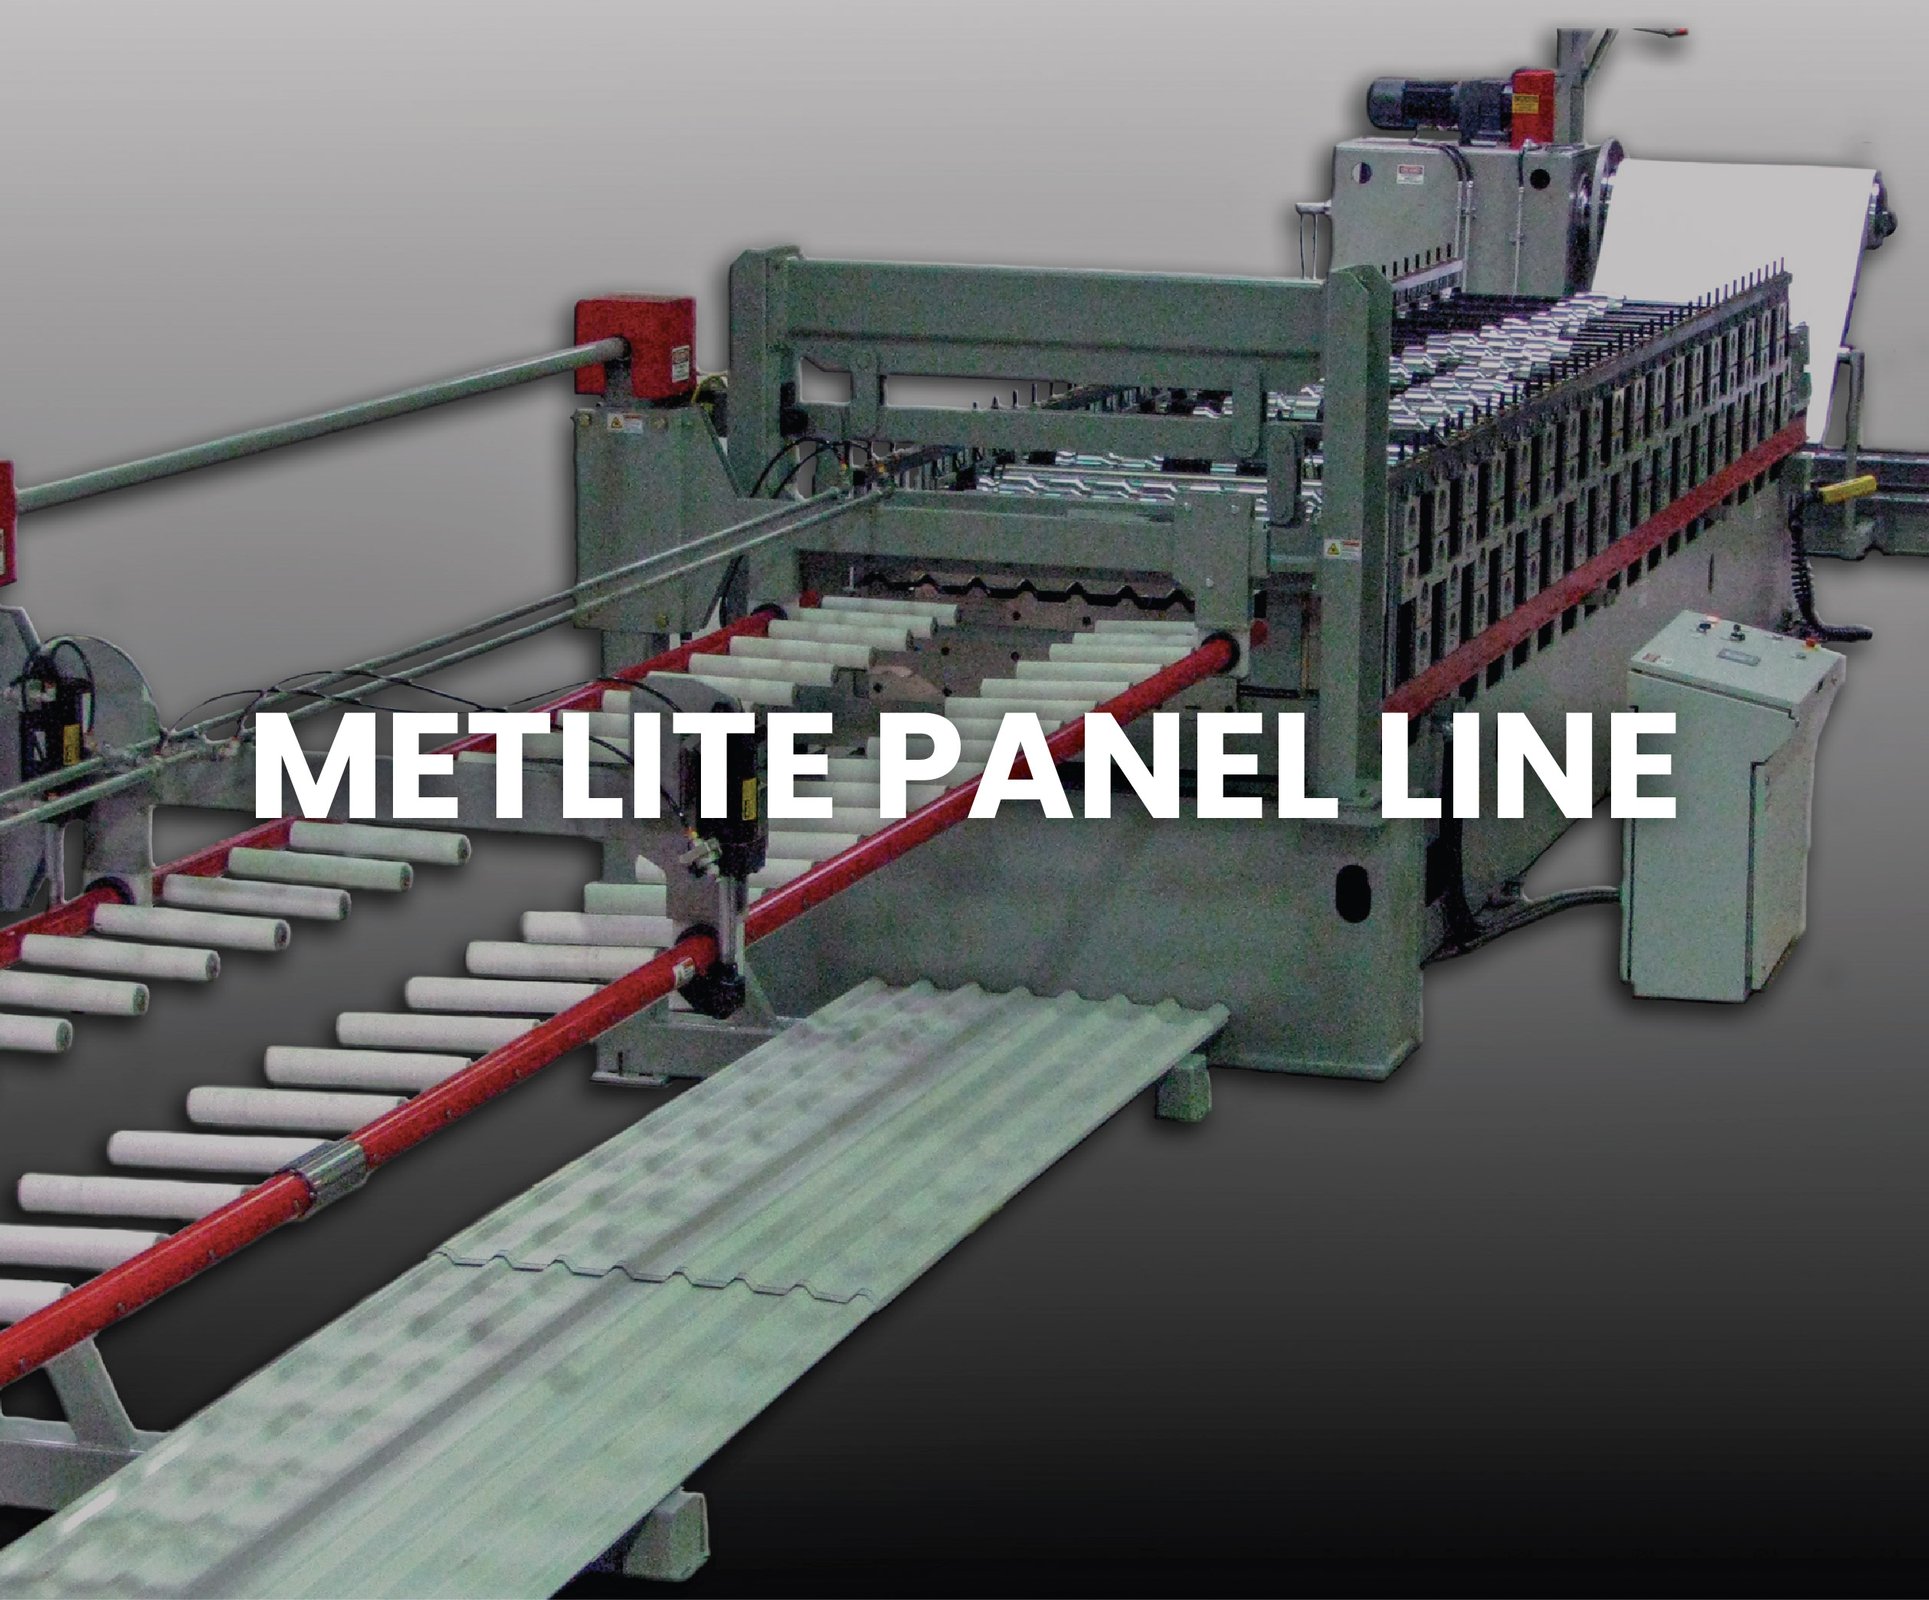 MetLite Panel Line